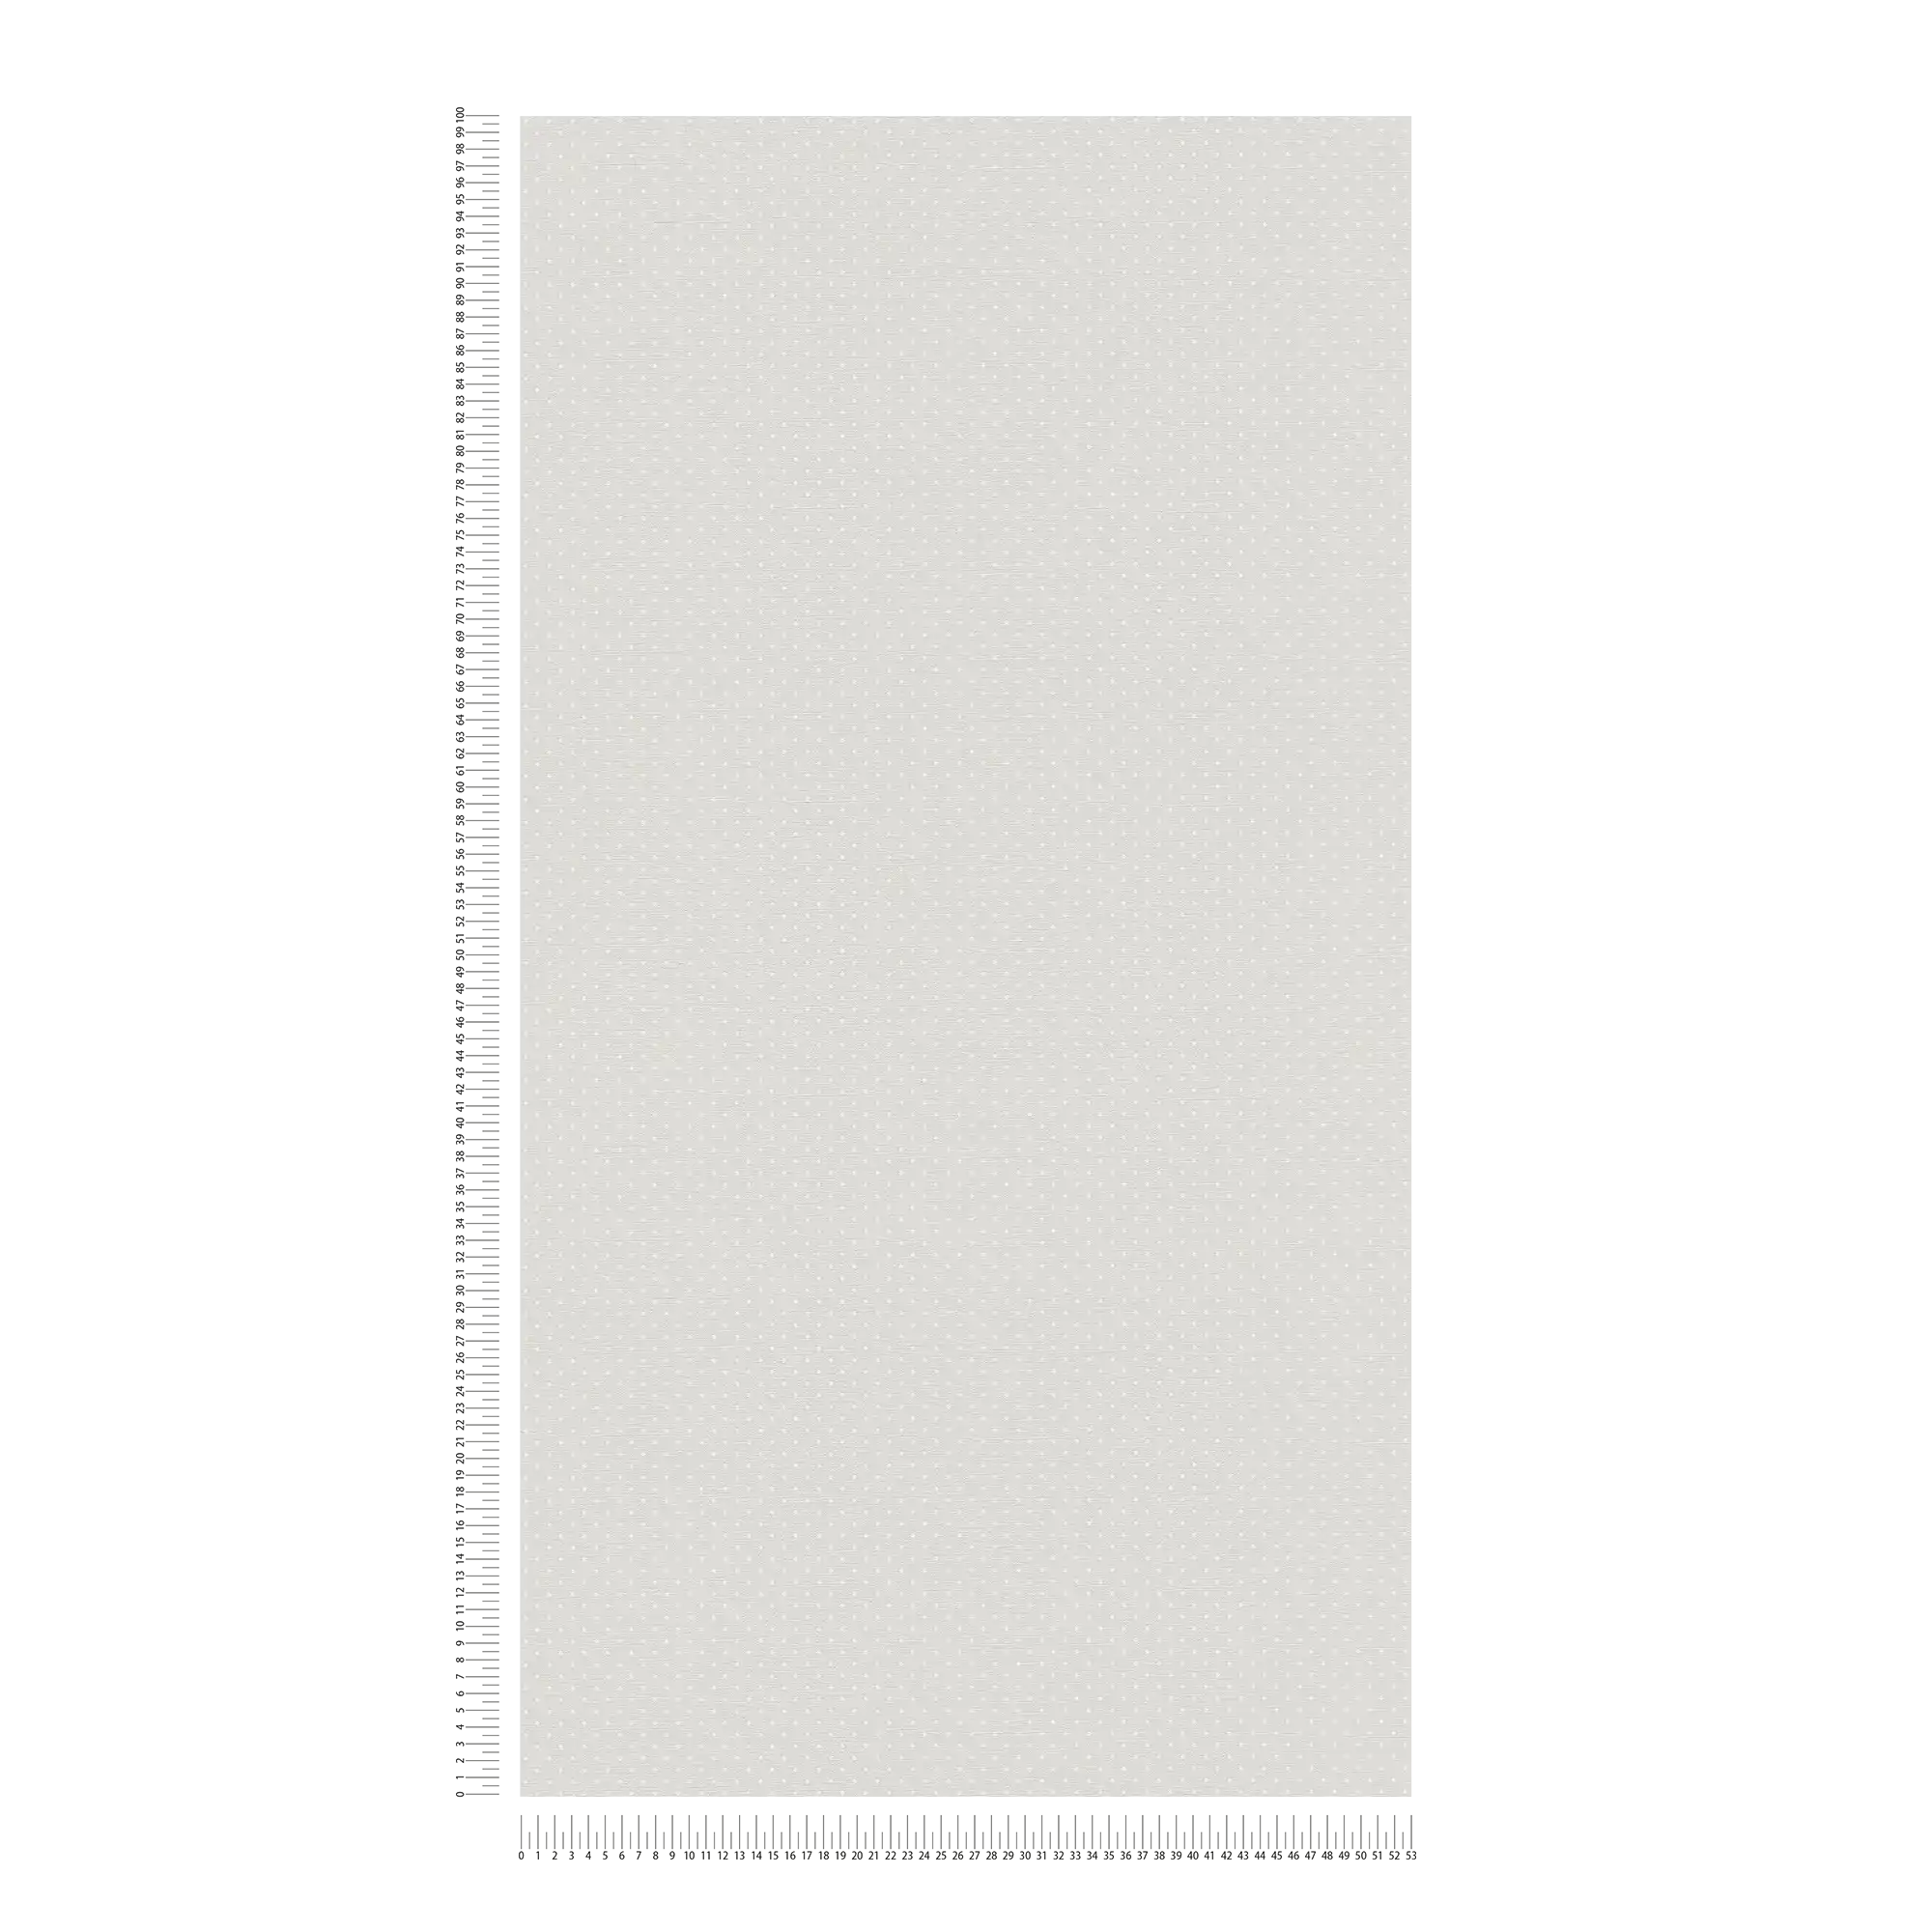             Carta da parati in tessuto non tessuto con motivo a piccoli punti - grigio, bianco
        